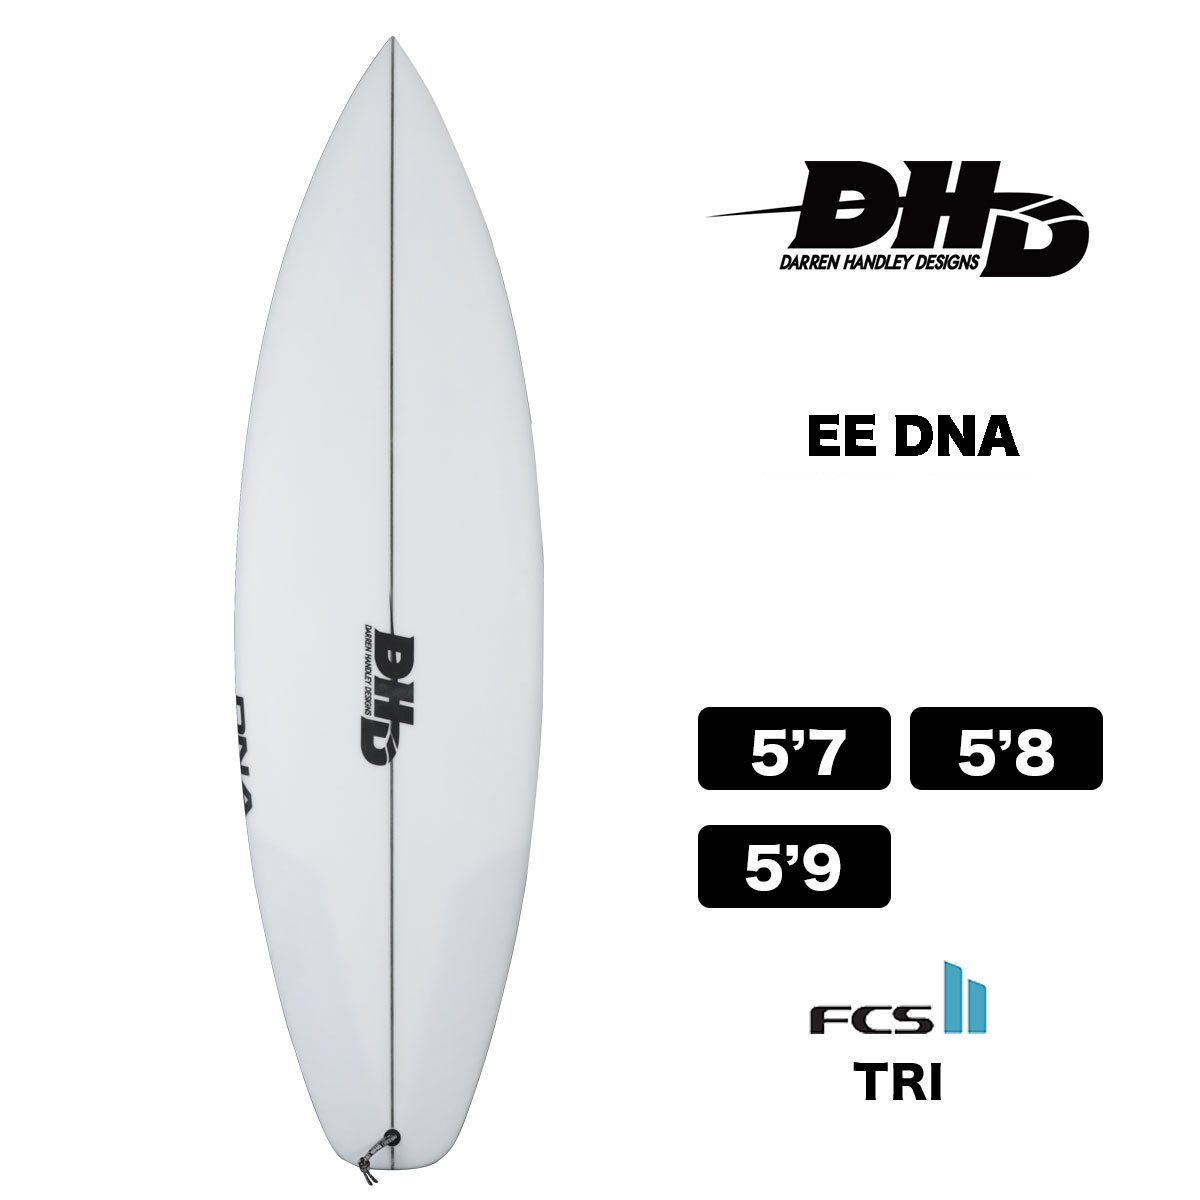 【10%OFF スプリングフェア】DHD SURFBOARDS EE DNA ダレンハンドレーデザイン イーイーディーエヌエー ショートボード  FCS2 サーフボード トライフィン クリア セール-ジャックオーシャンスポーツ